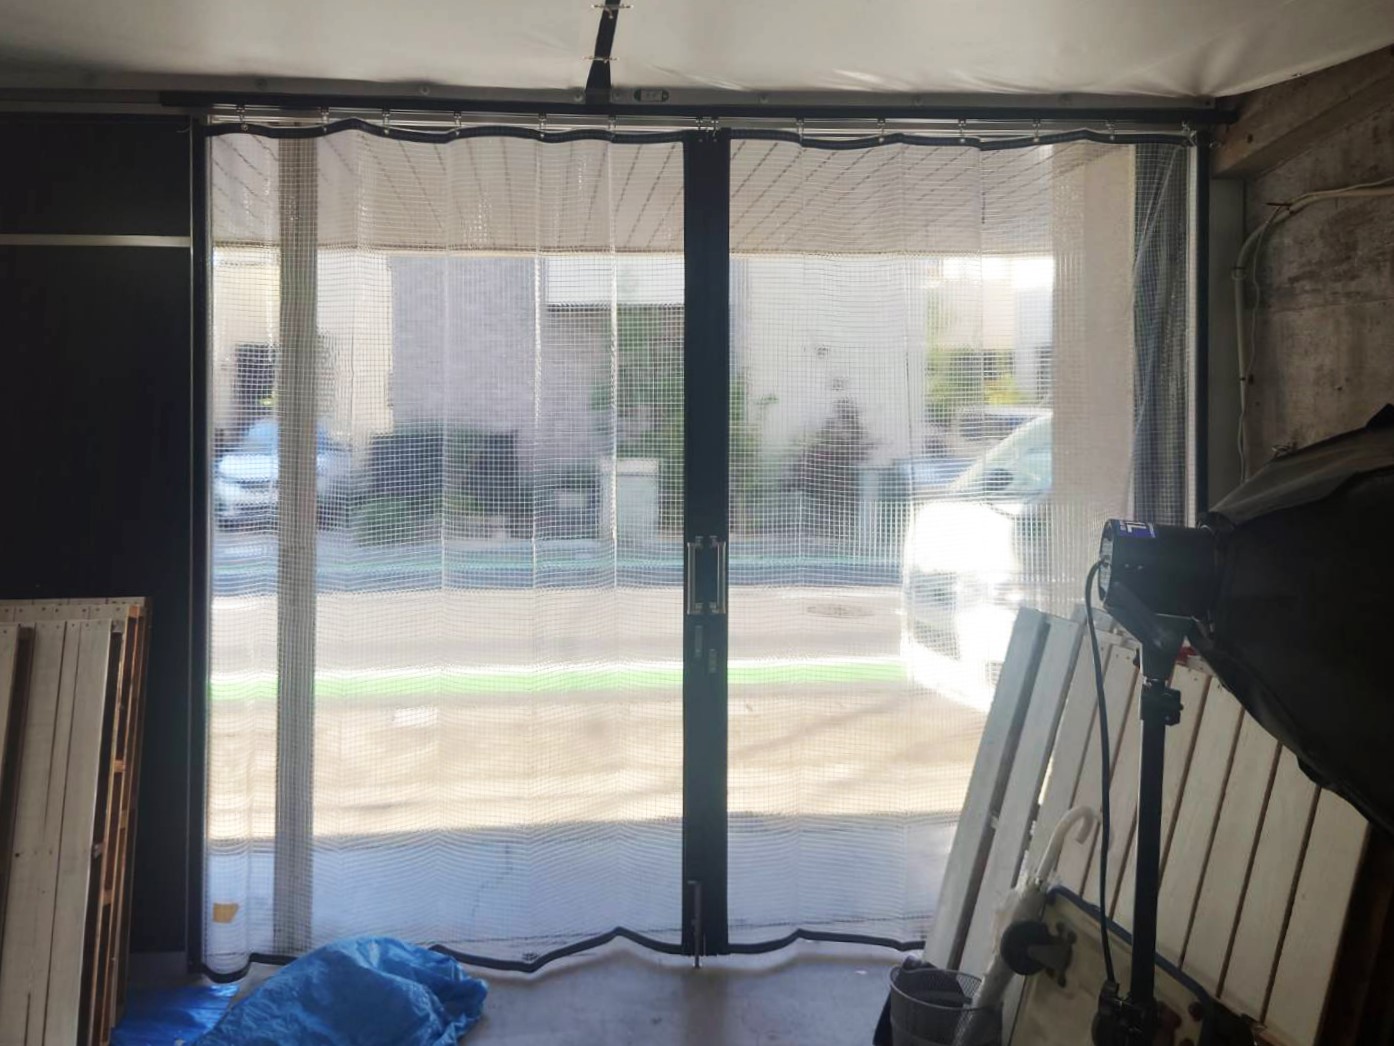 補強用の糸が入った糸入り透明ビニールカーテンは耐久性と見透しを兼ね備え、内側から来客の様子がよくわかります